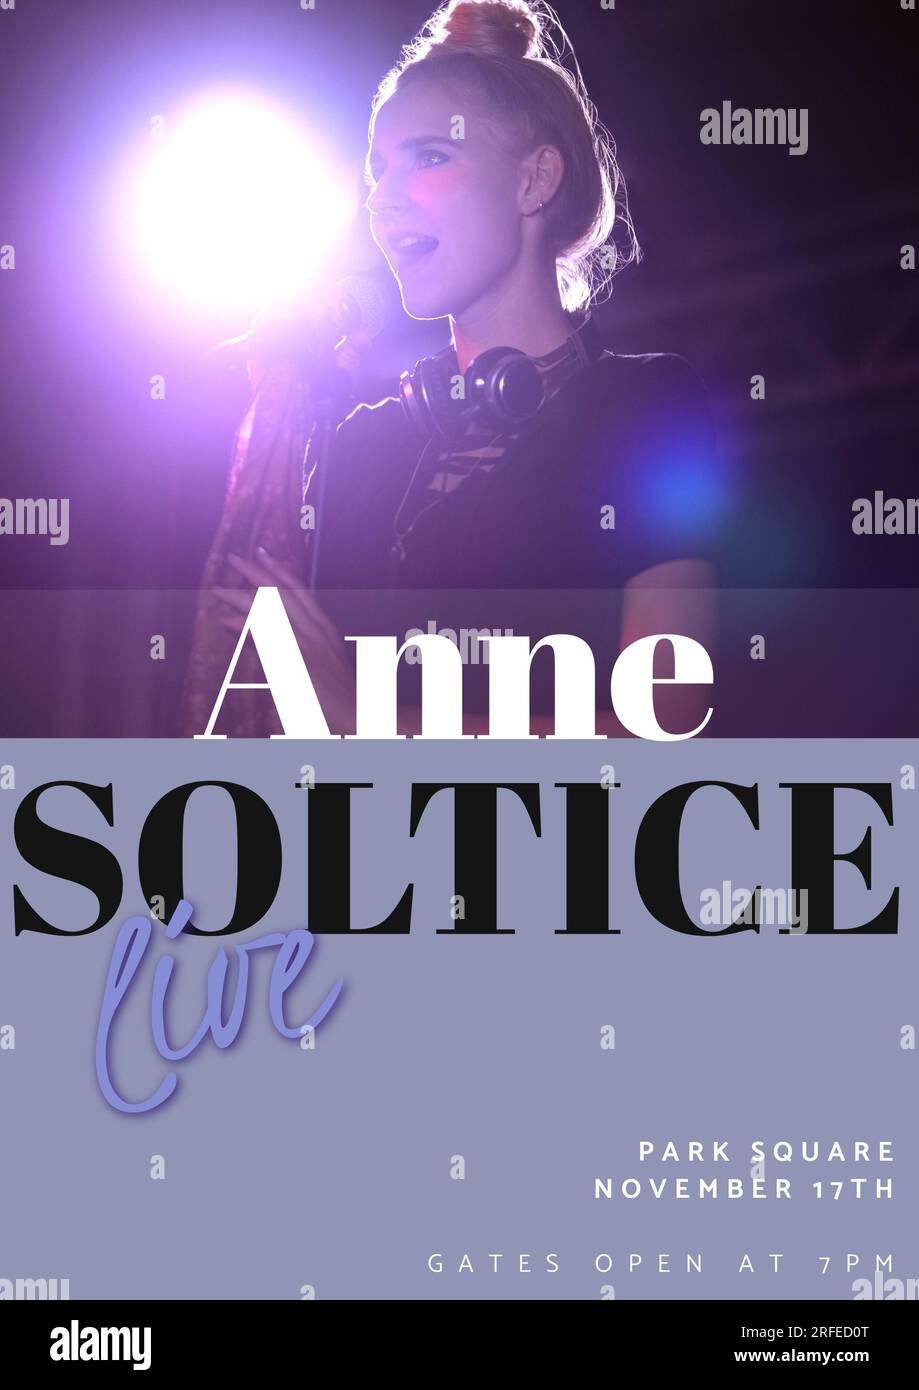 Anne soltice live, Park Square, november 11. Text und weiße Frau, die auf der Bühne singt Stockfoto